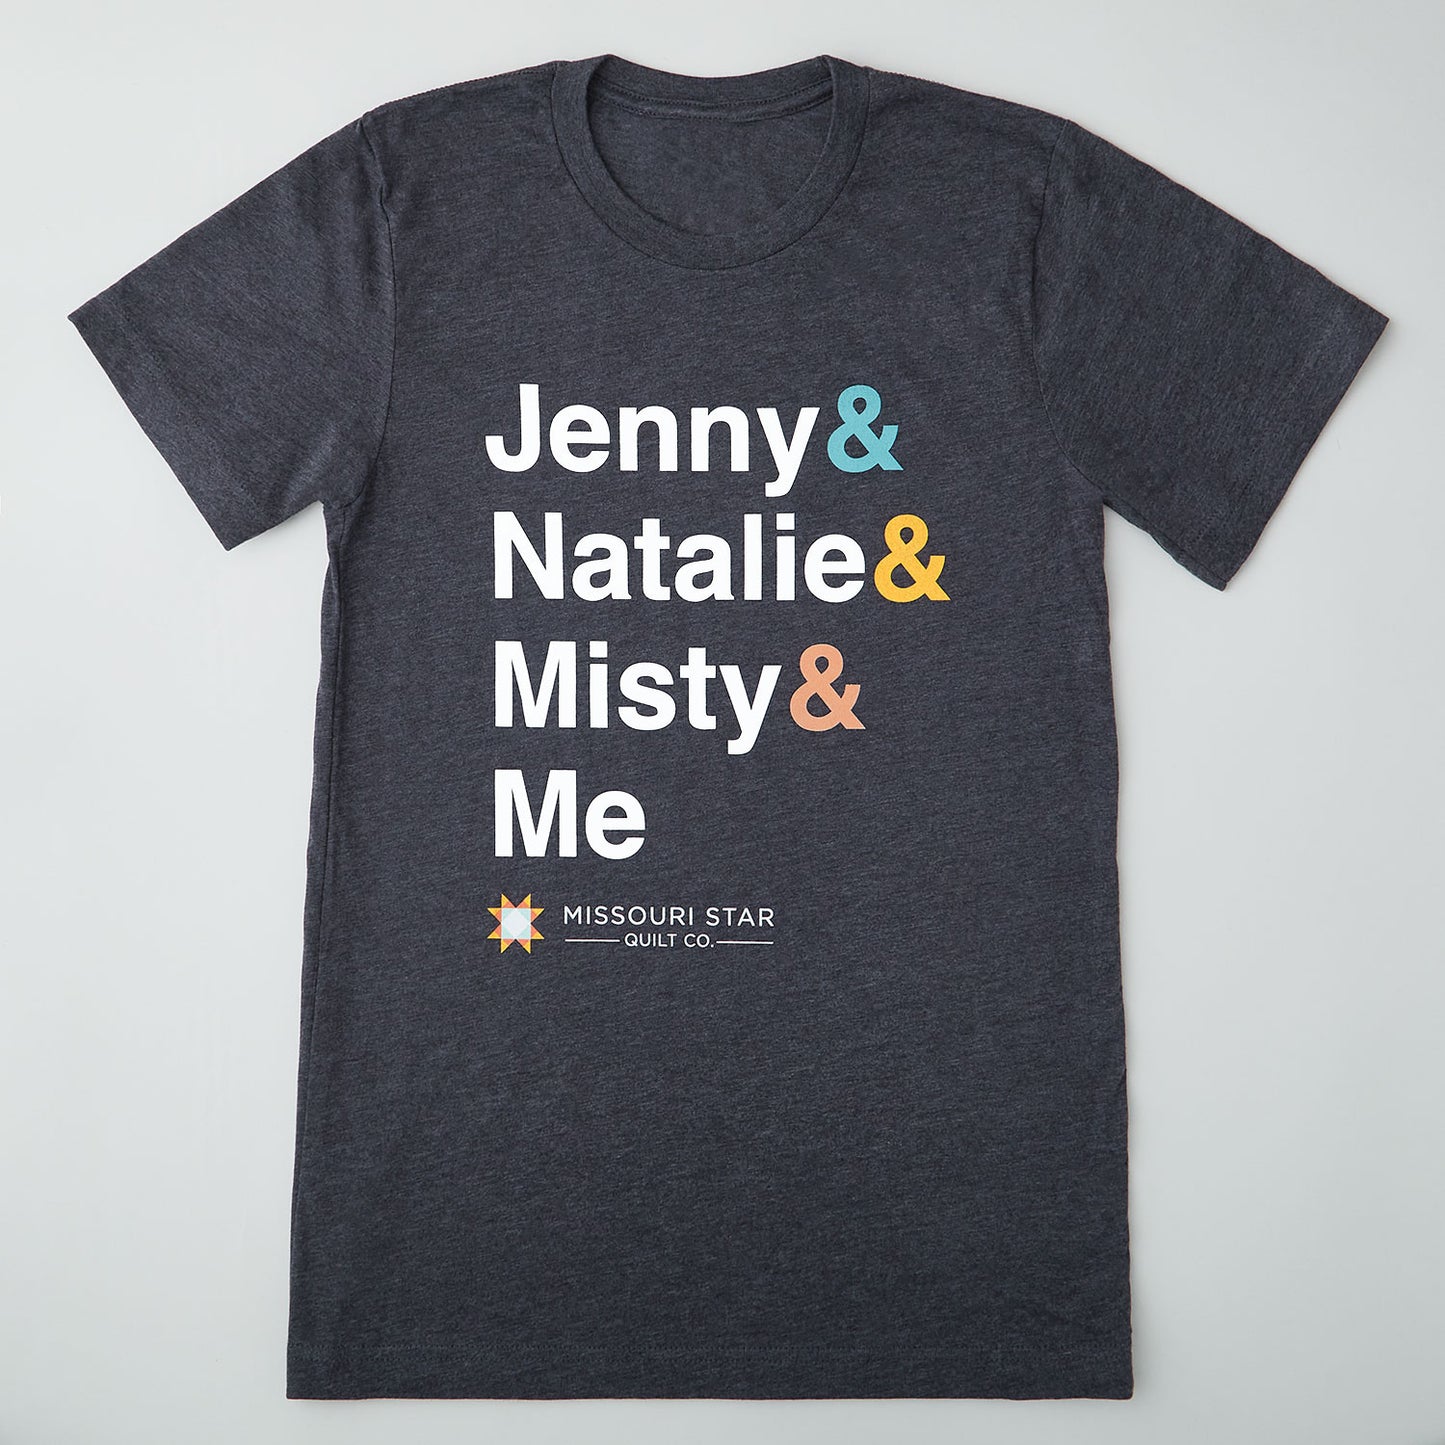 Jenny & Natalie & Misty & Me T-shirt - S Primary Image